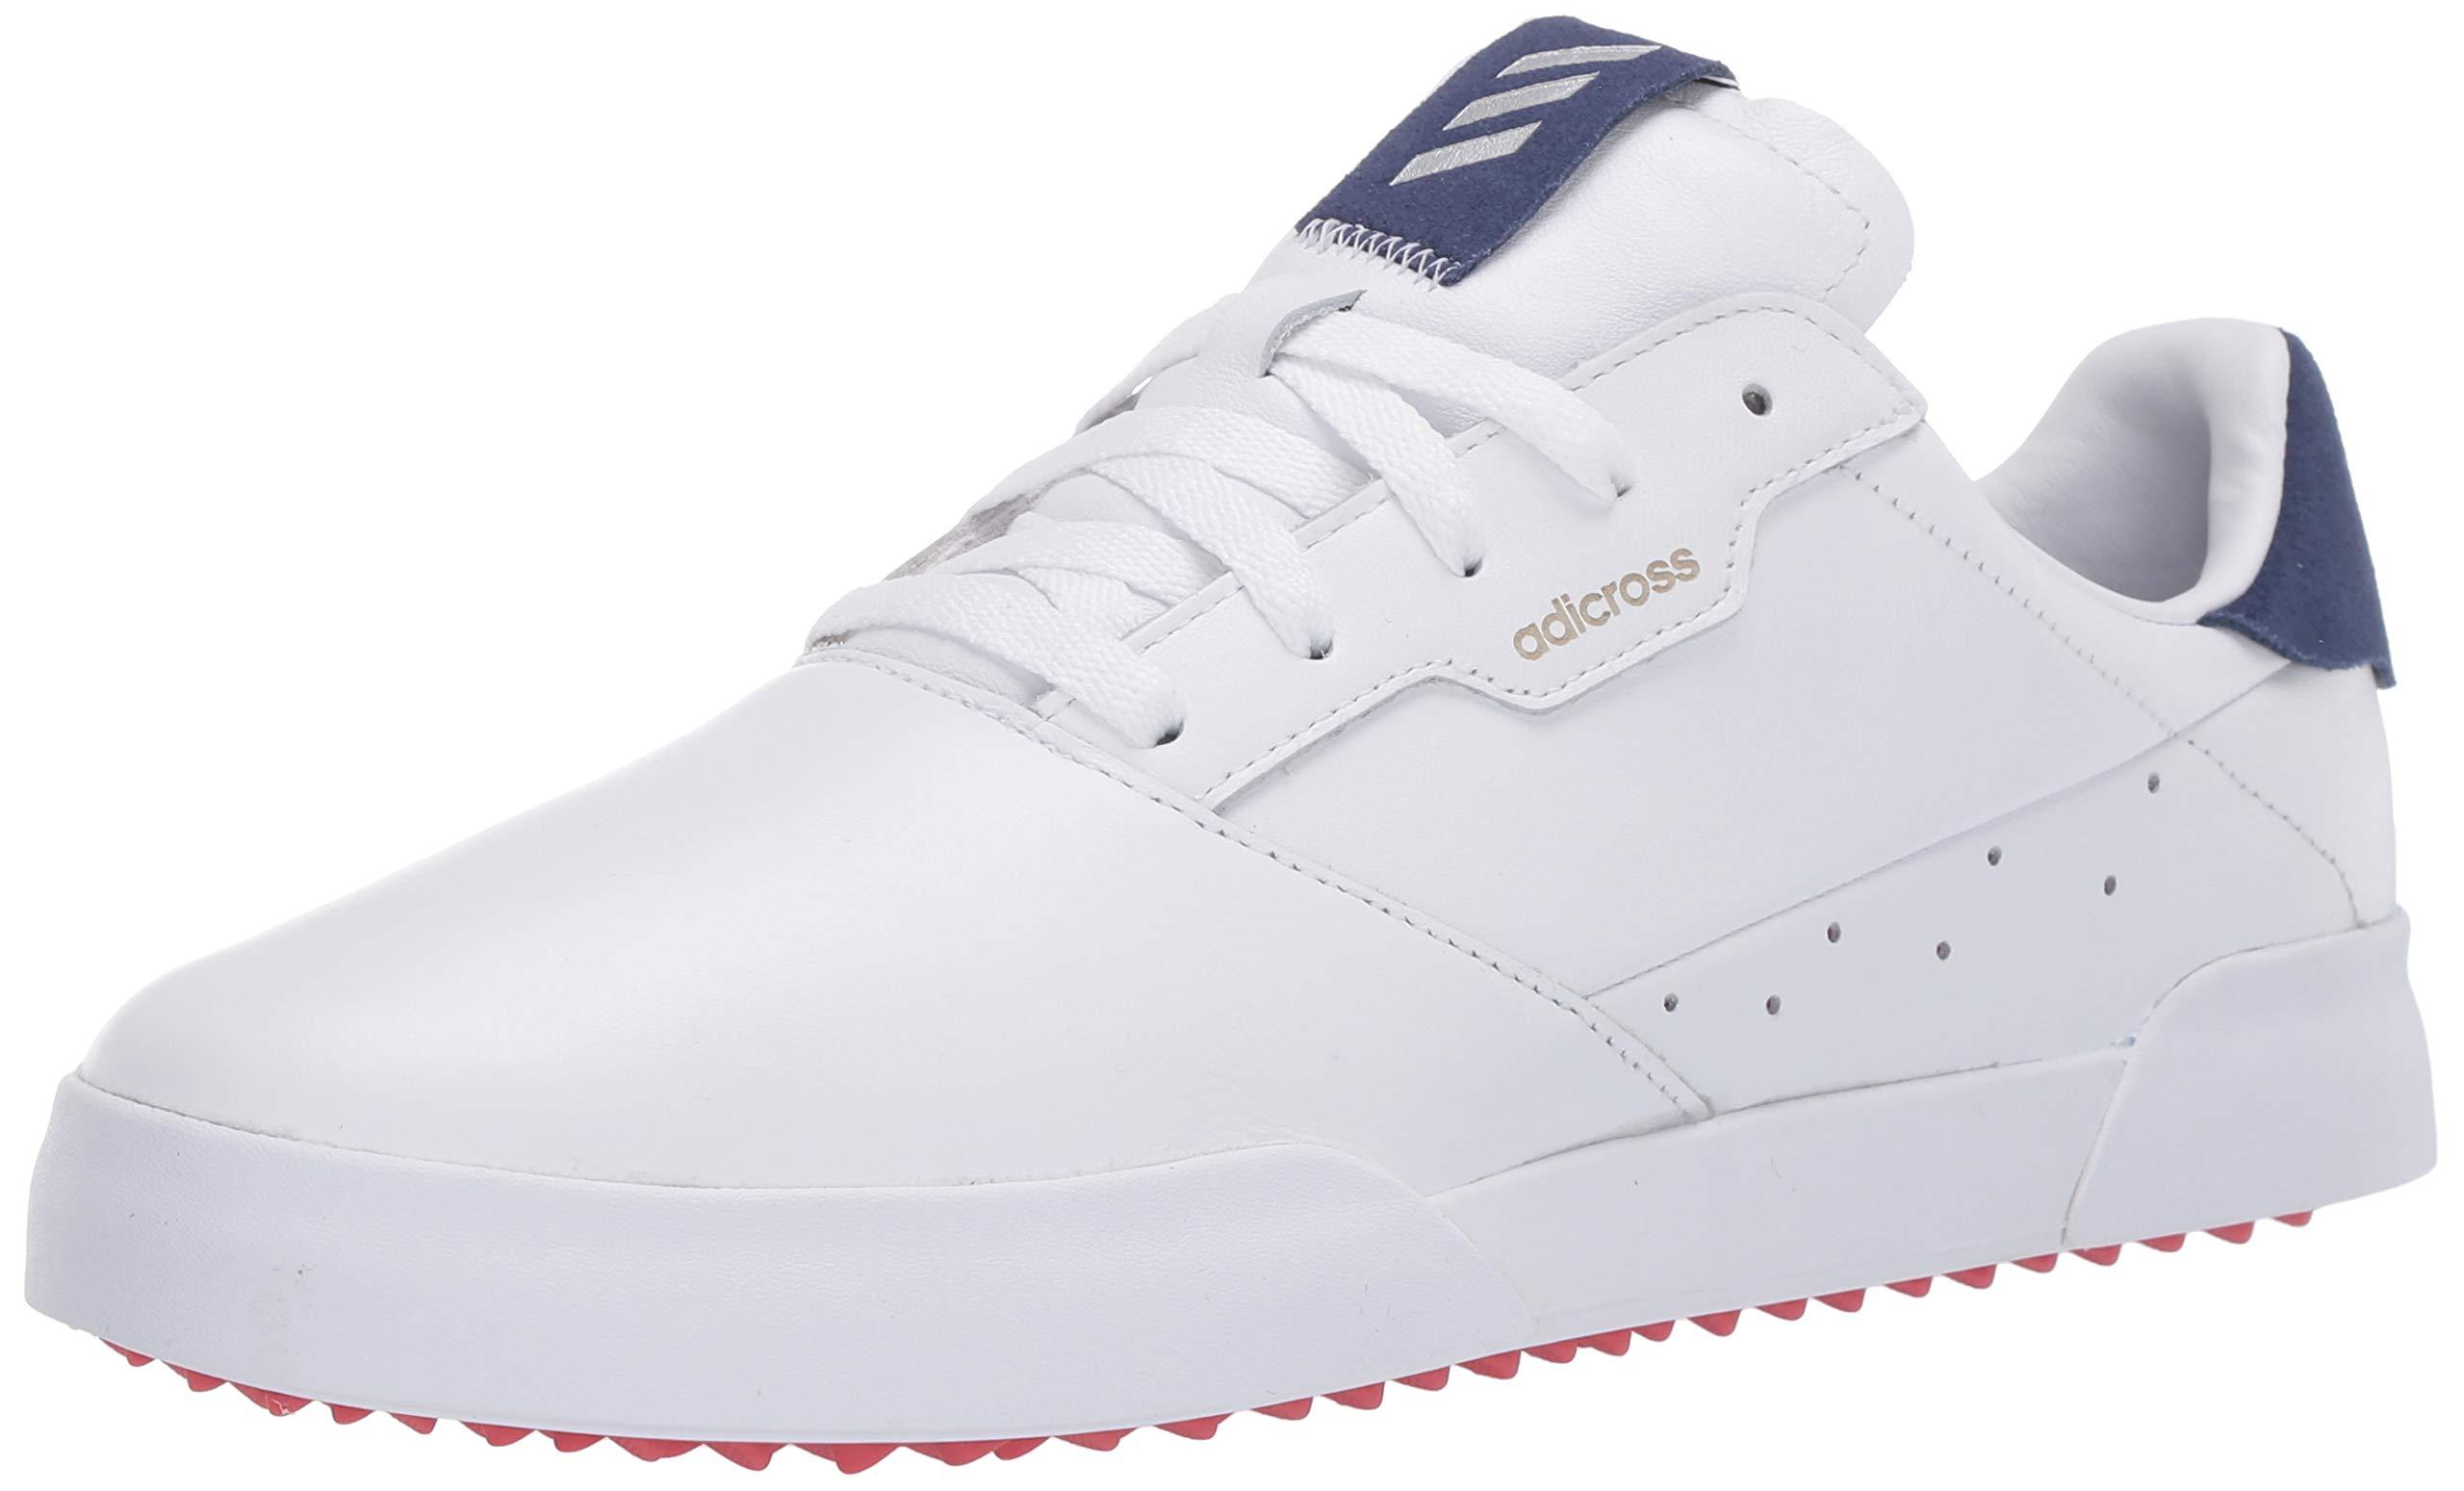 adicross retro golf shoes white